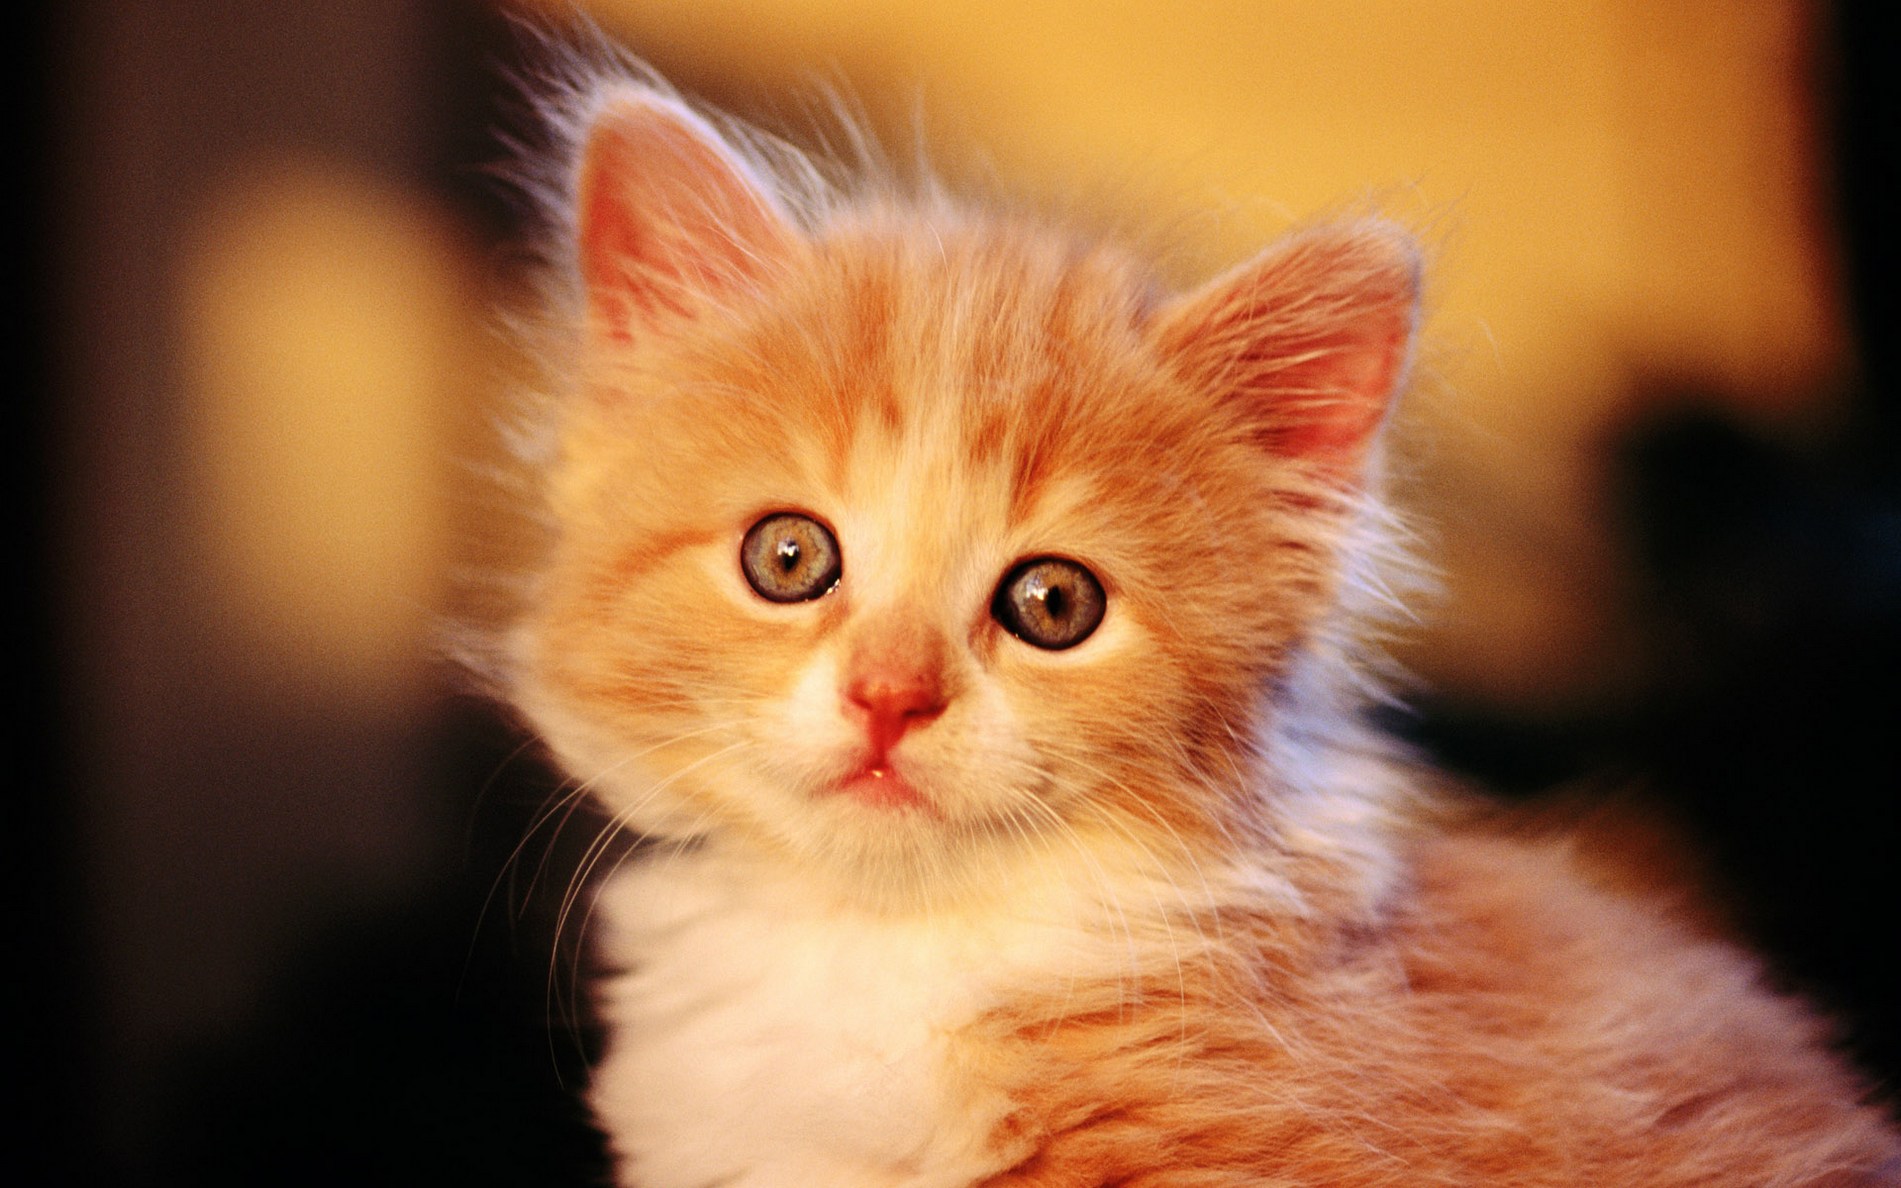 娇小可爱的萌猫咪动物高清图片